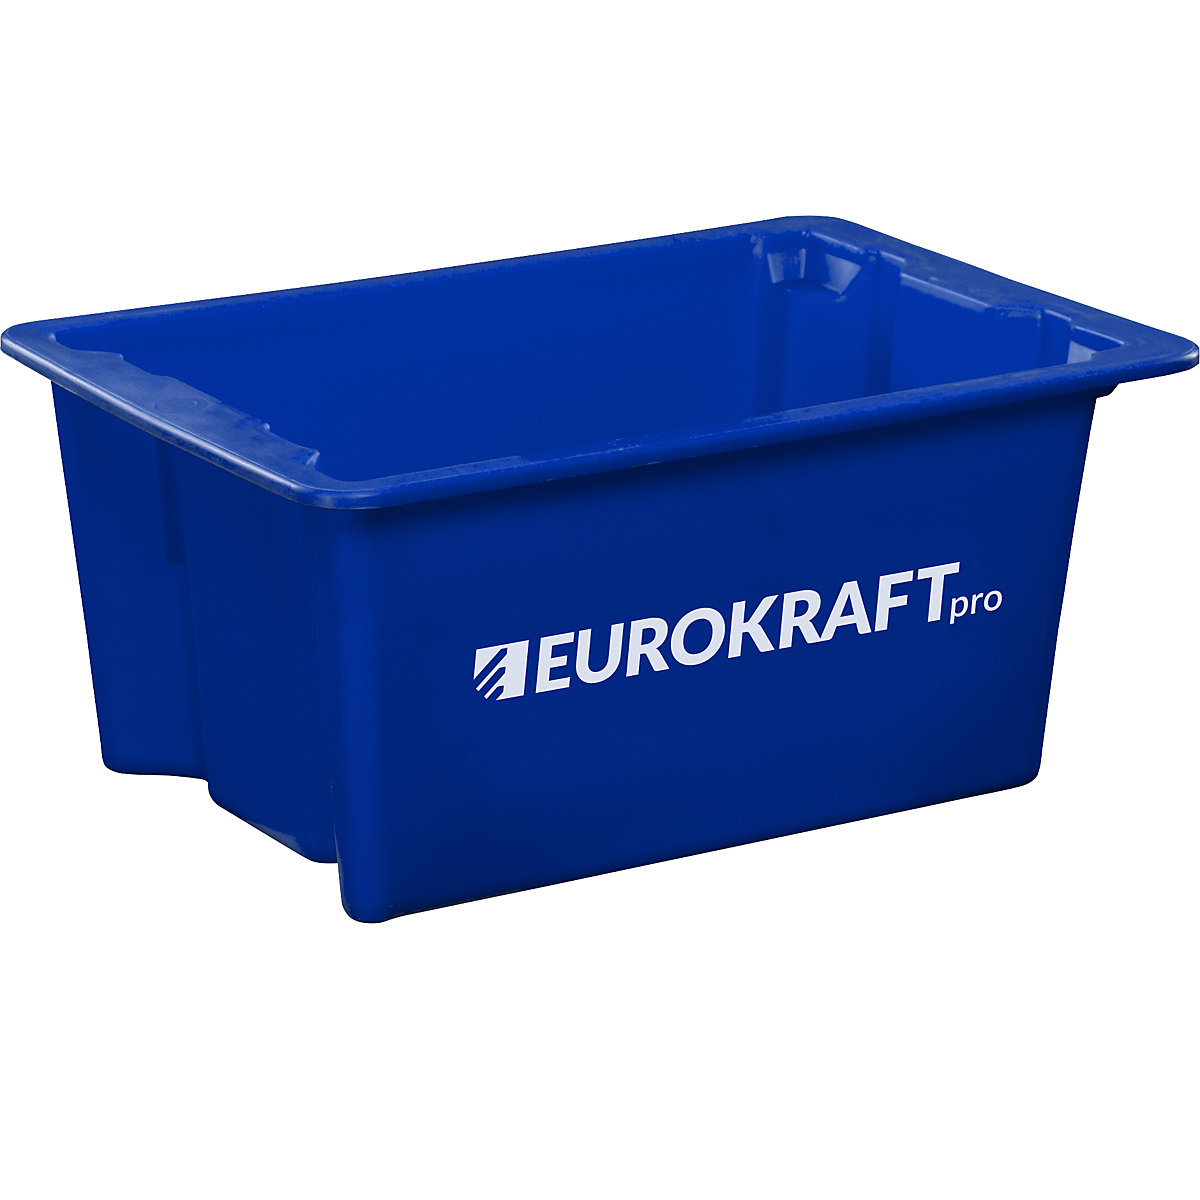 EUROKRAFTpro – Otočná stohovací nádoba z polypropylenu vhodného pro potraviny, obsah 6 litrů, bal.j. 4 ks, stěny a dno plné, modrá